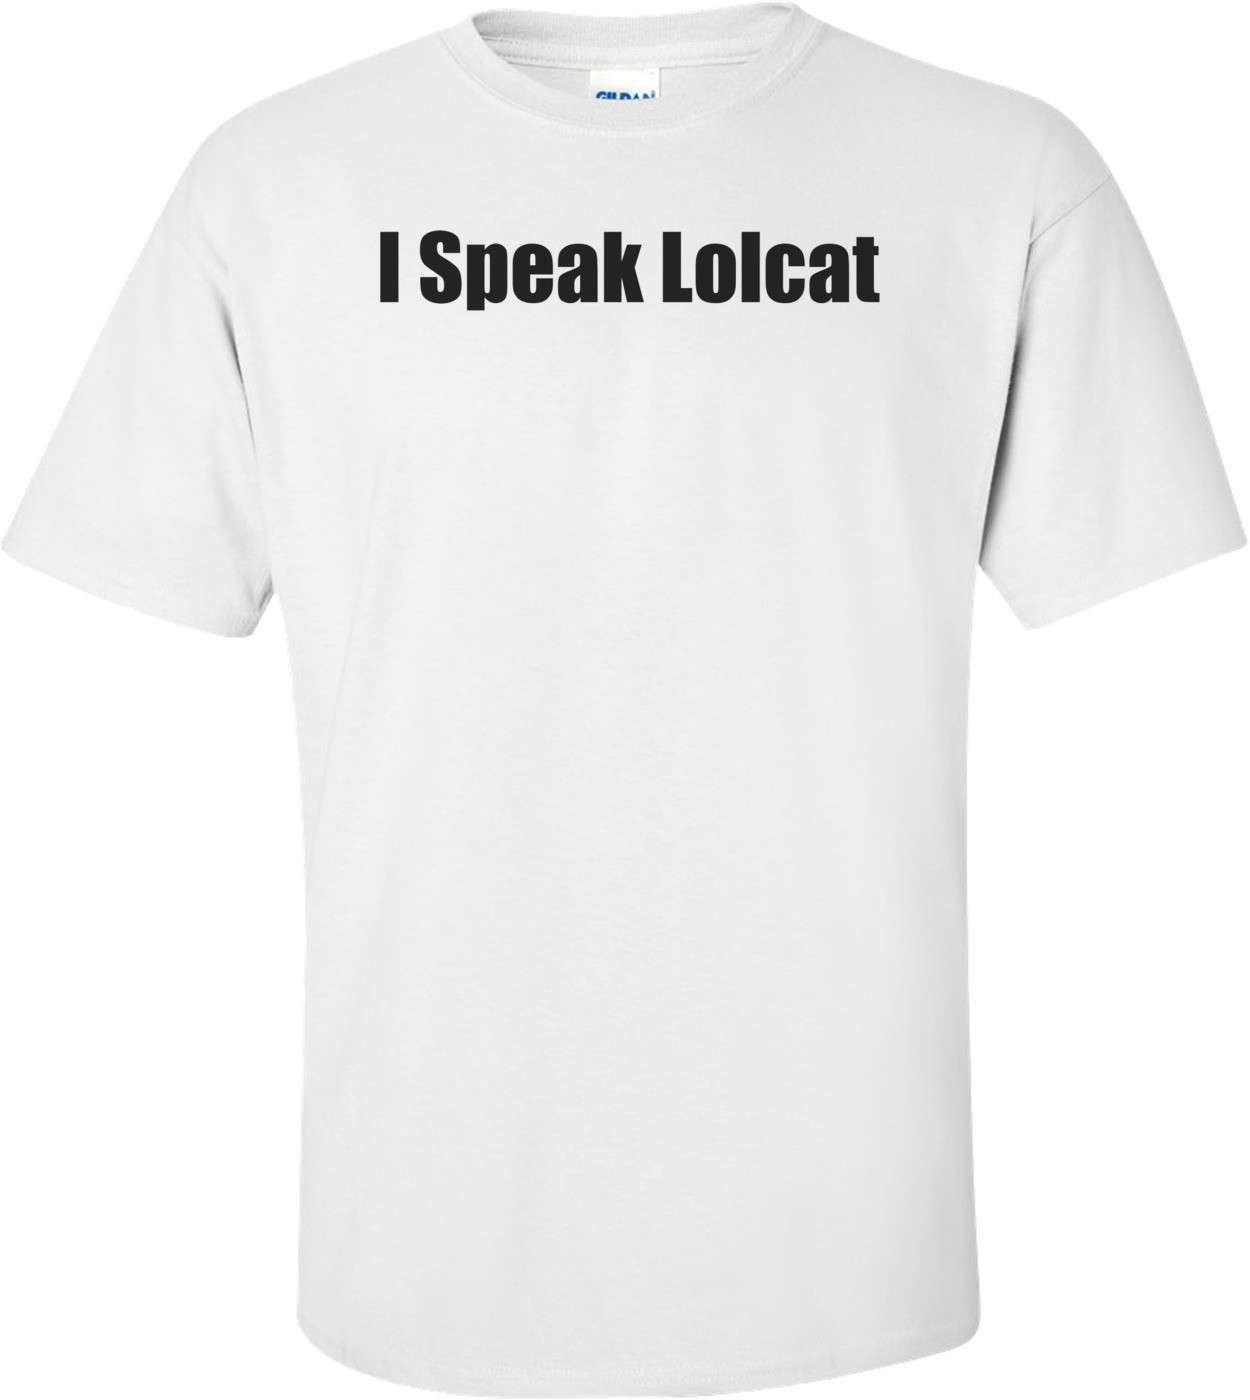 I Speak Lolcat